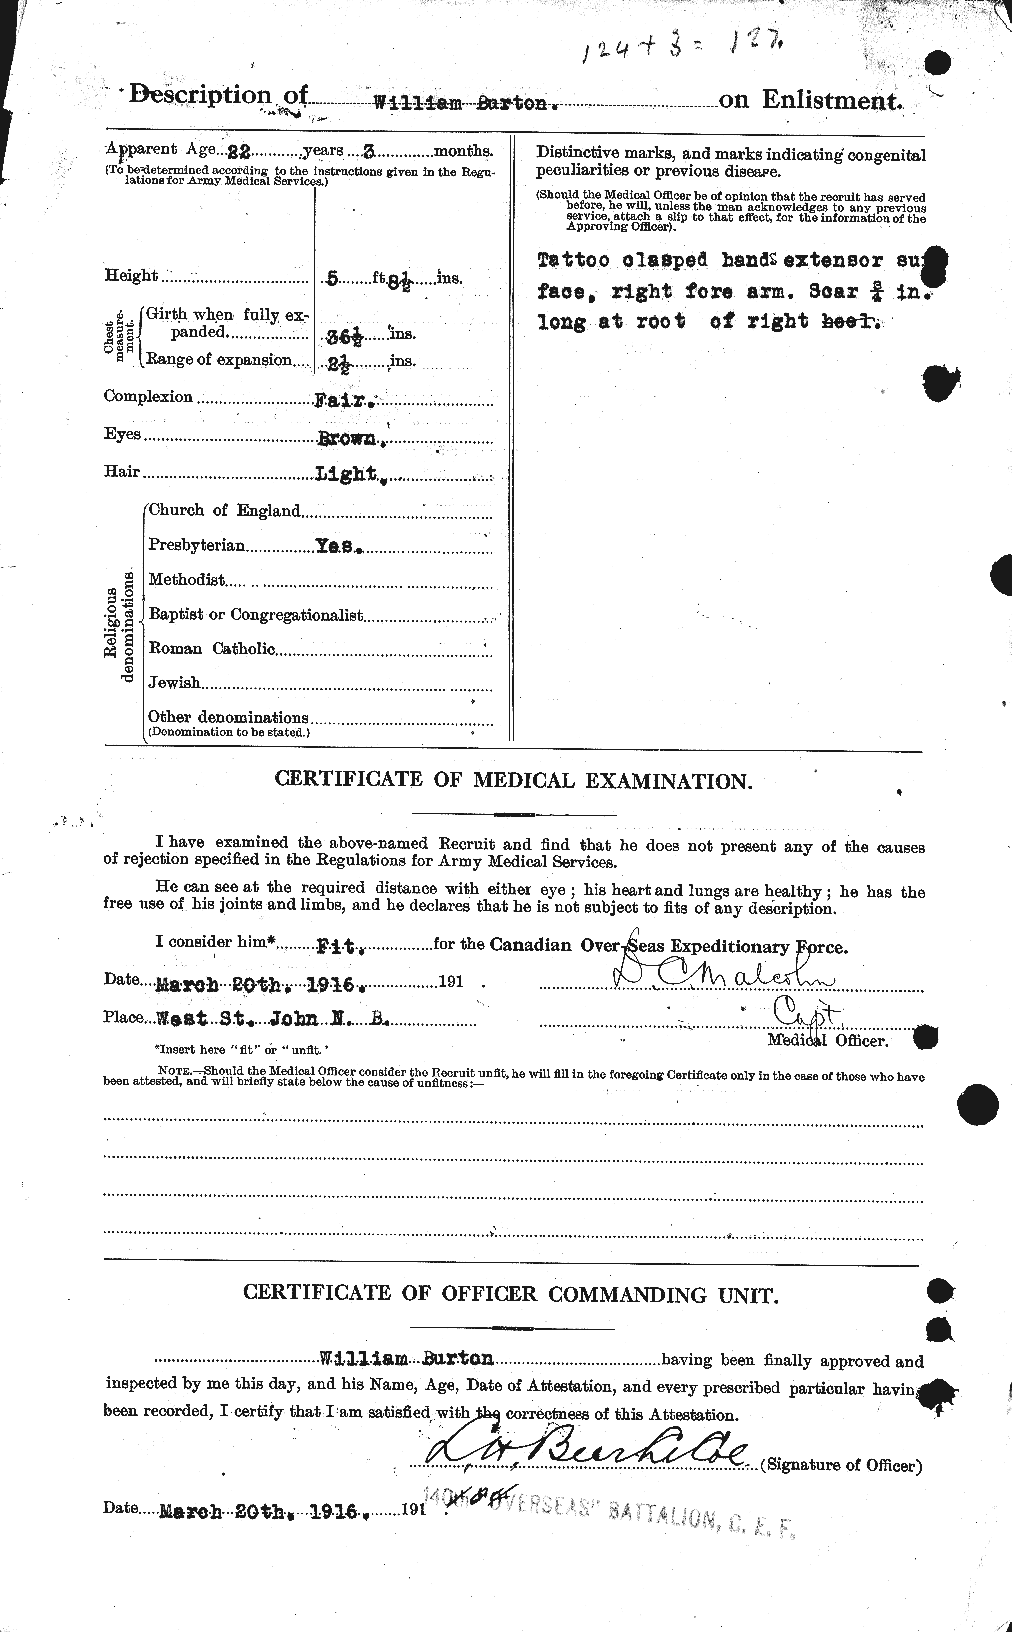 Dossiers du Personnel de la Première Guerre mondiale - CEC 272756b